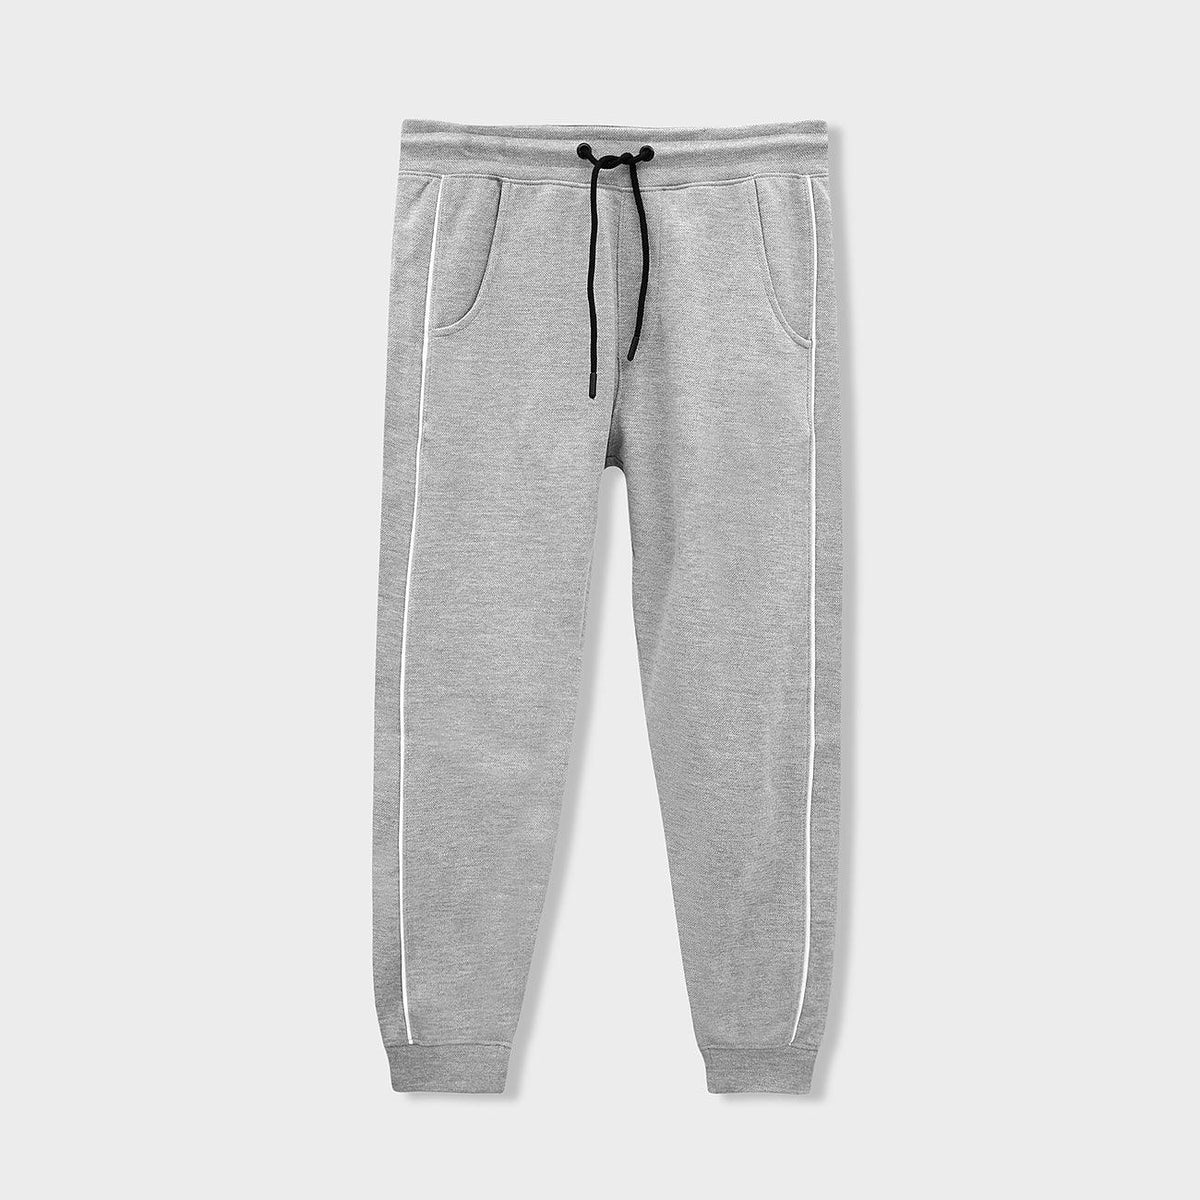 Men Soft Cotton Grey Side Striped Pique Jogging Trouser (CE-120274) - Brands River